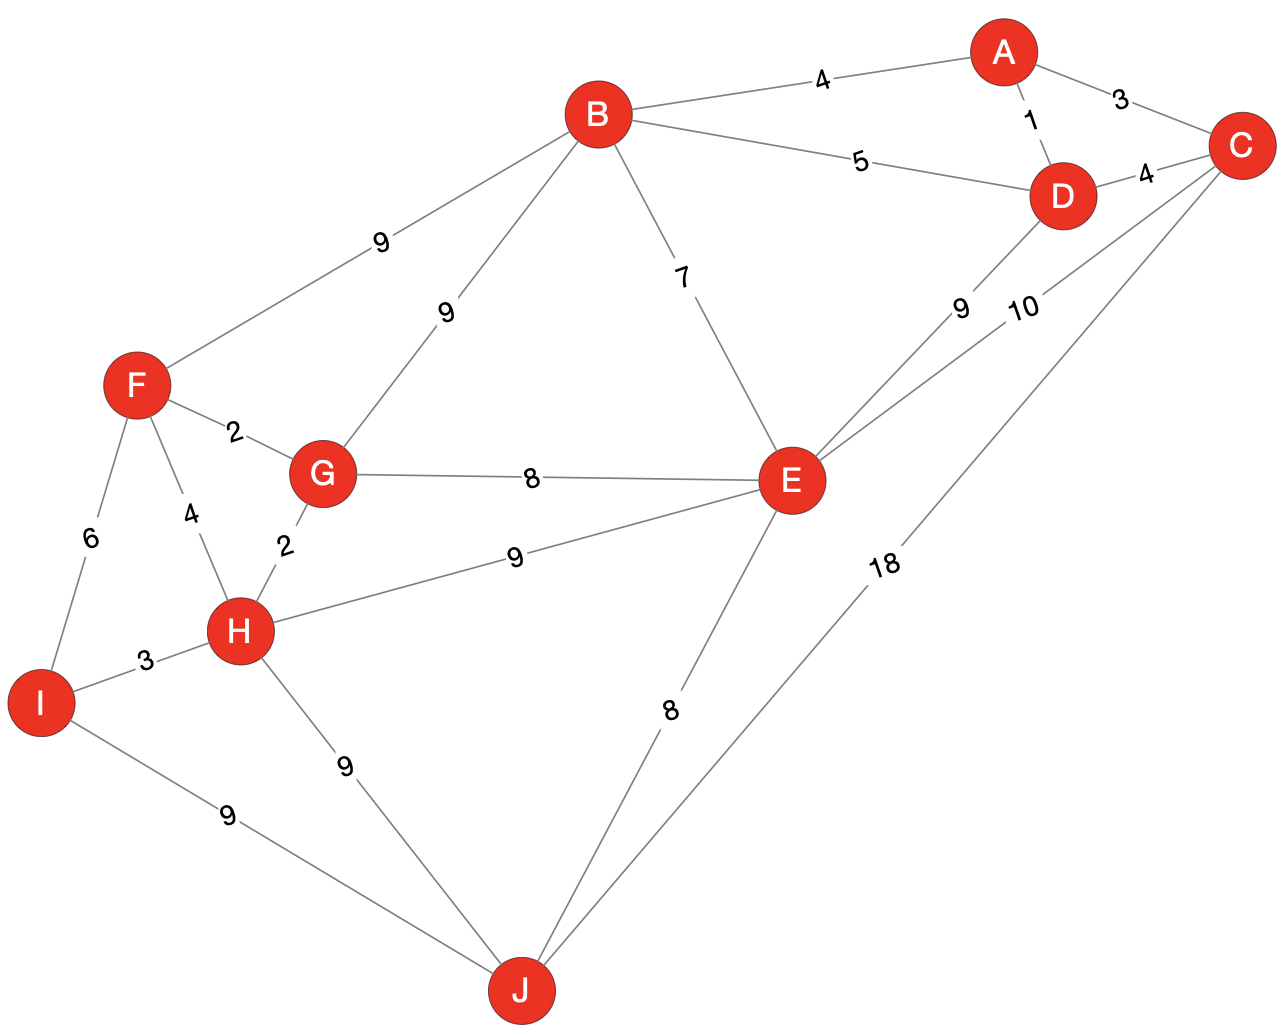 Graphe G d'un réseau d'habitations